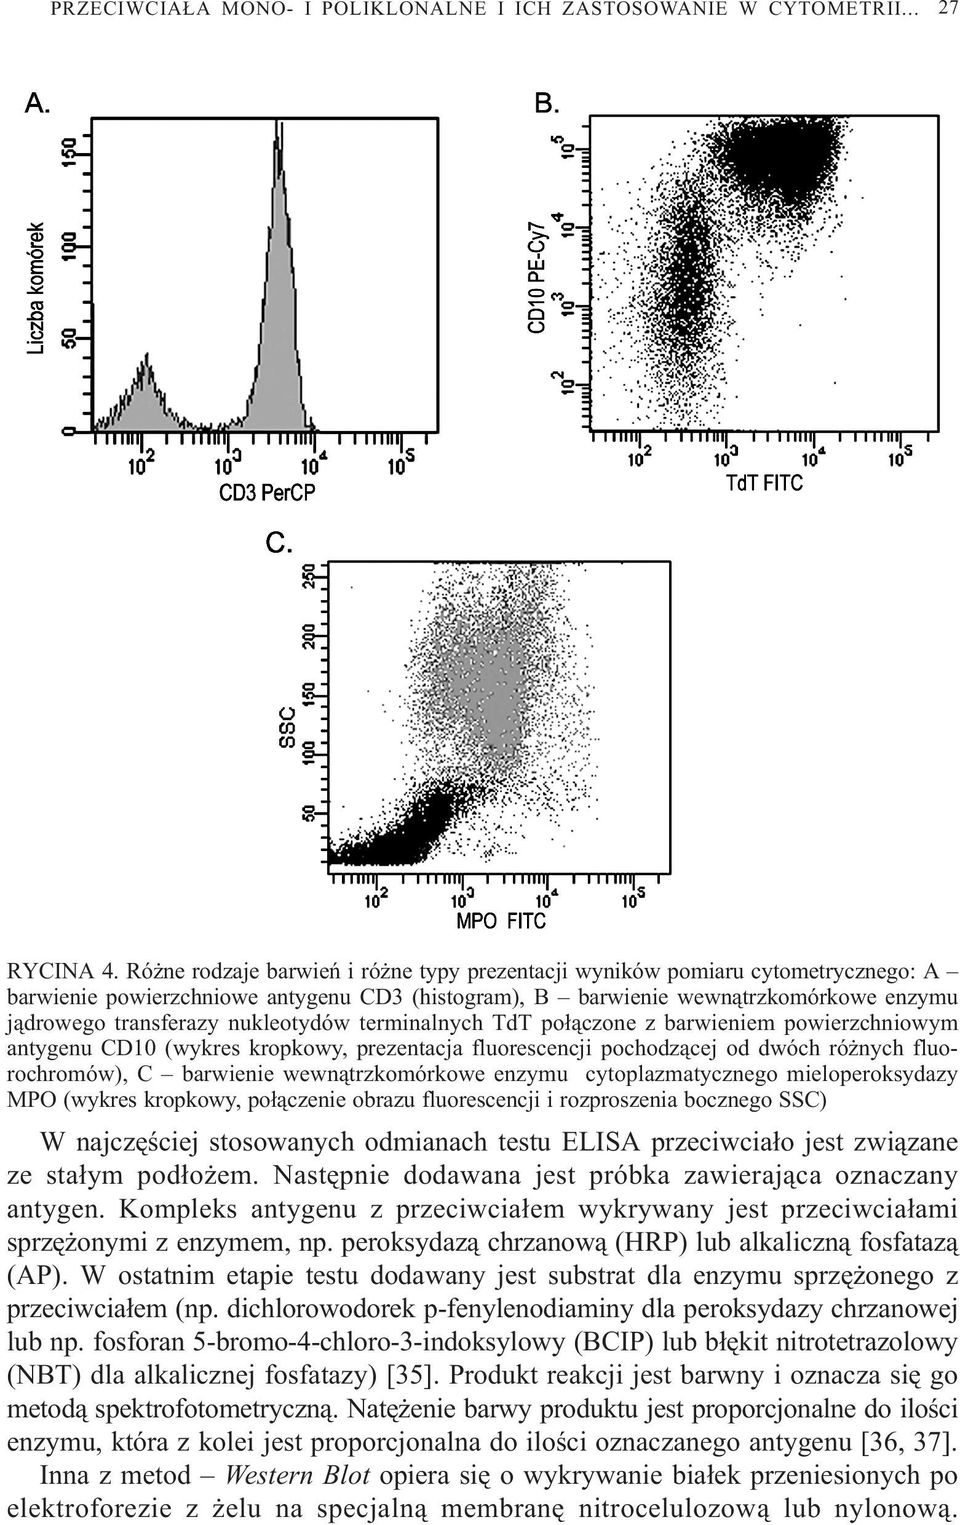 nukleotydów terminalnych TdT po³¹czone z barwieniem powierzchniowym antygenu CD10 (wykres kropkowy, prezentacja fluorescencji pochodz¹cej od dwóch ró nych fluorochromów), C barwienie